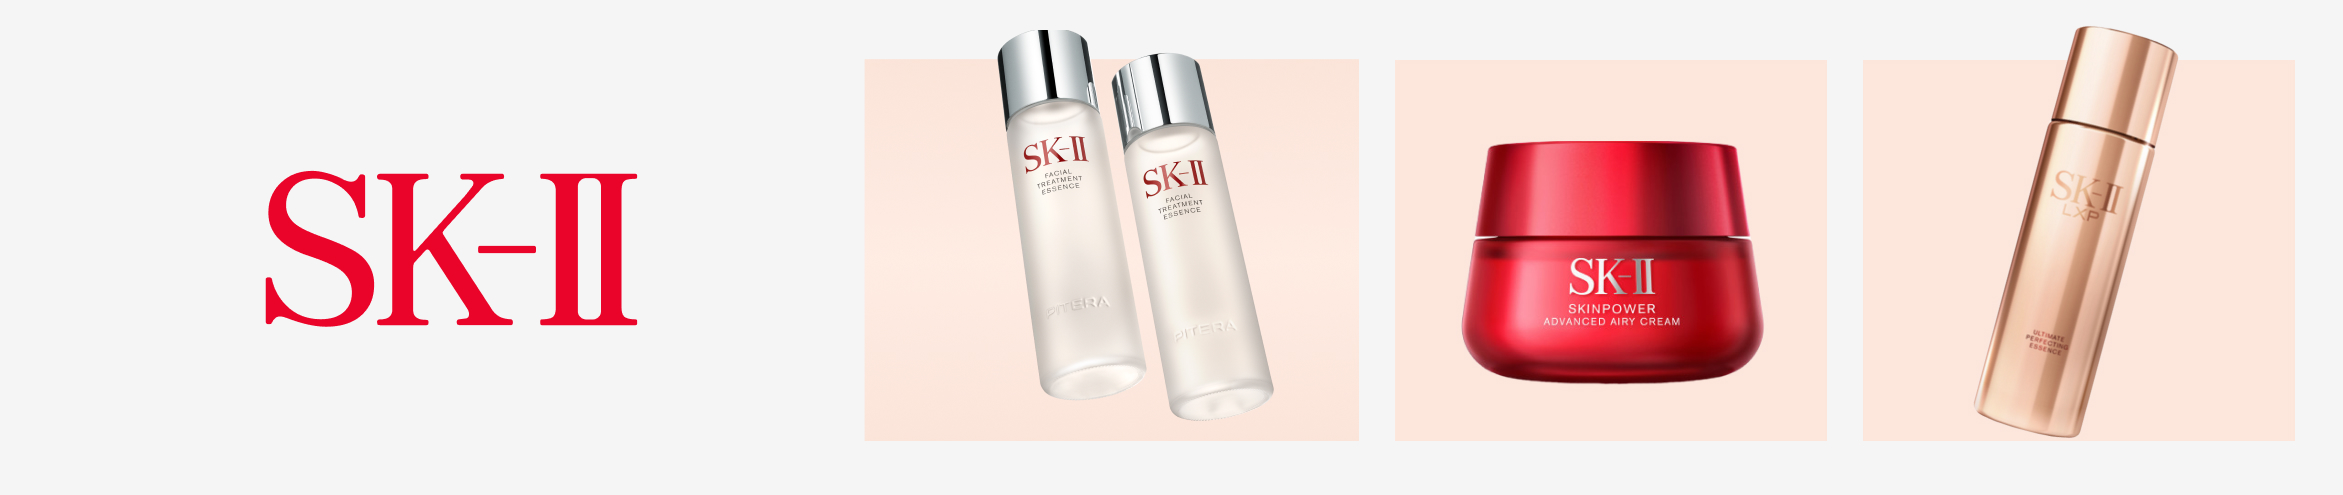 SK-II - Skin Care